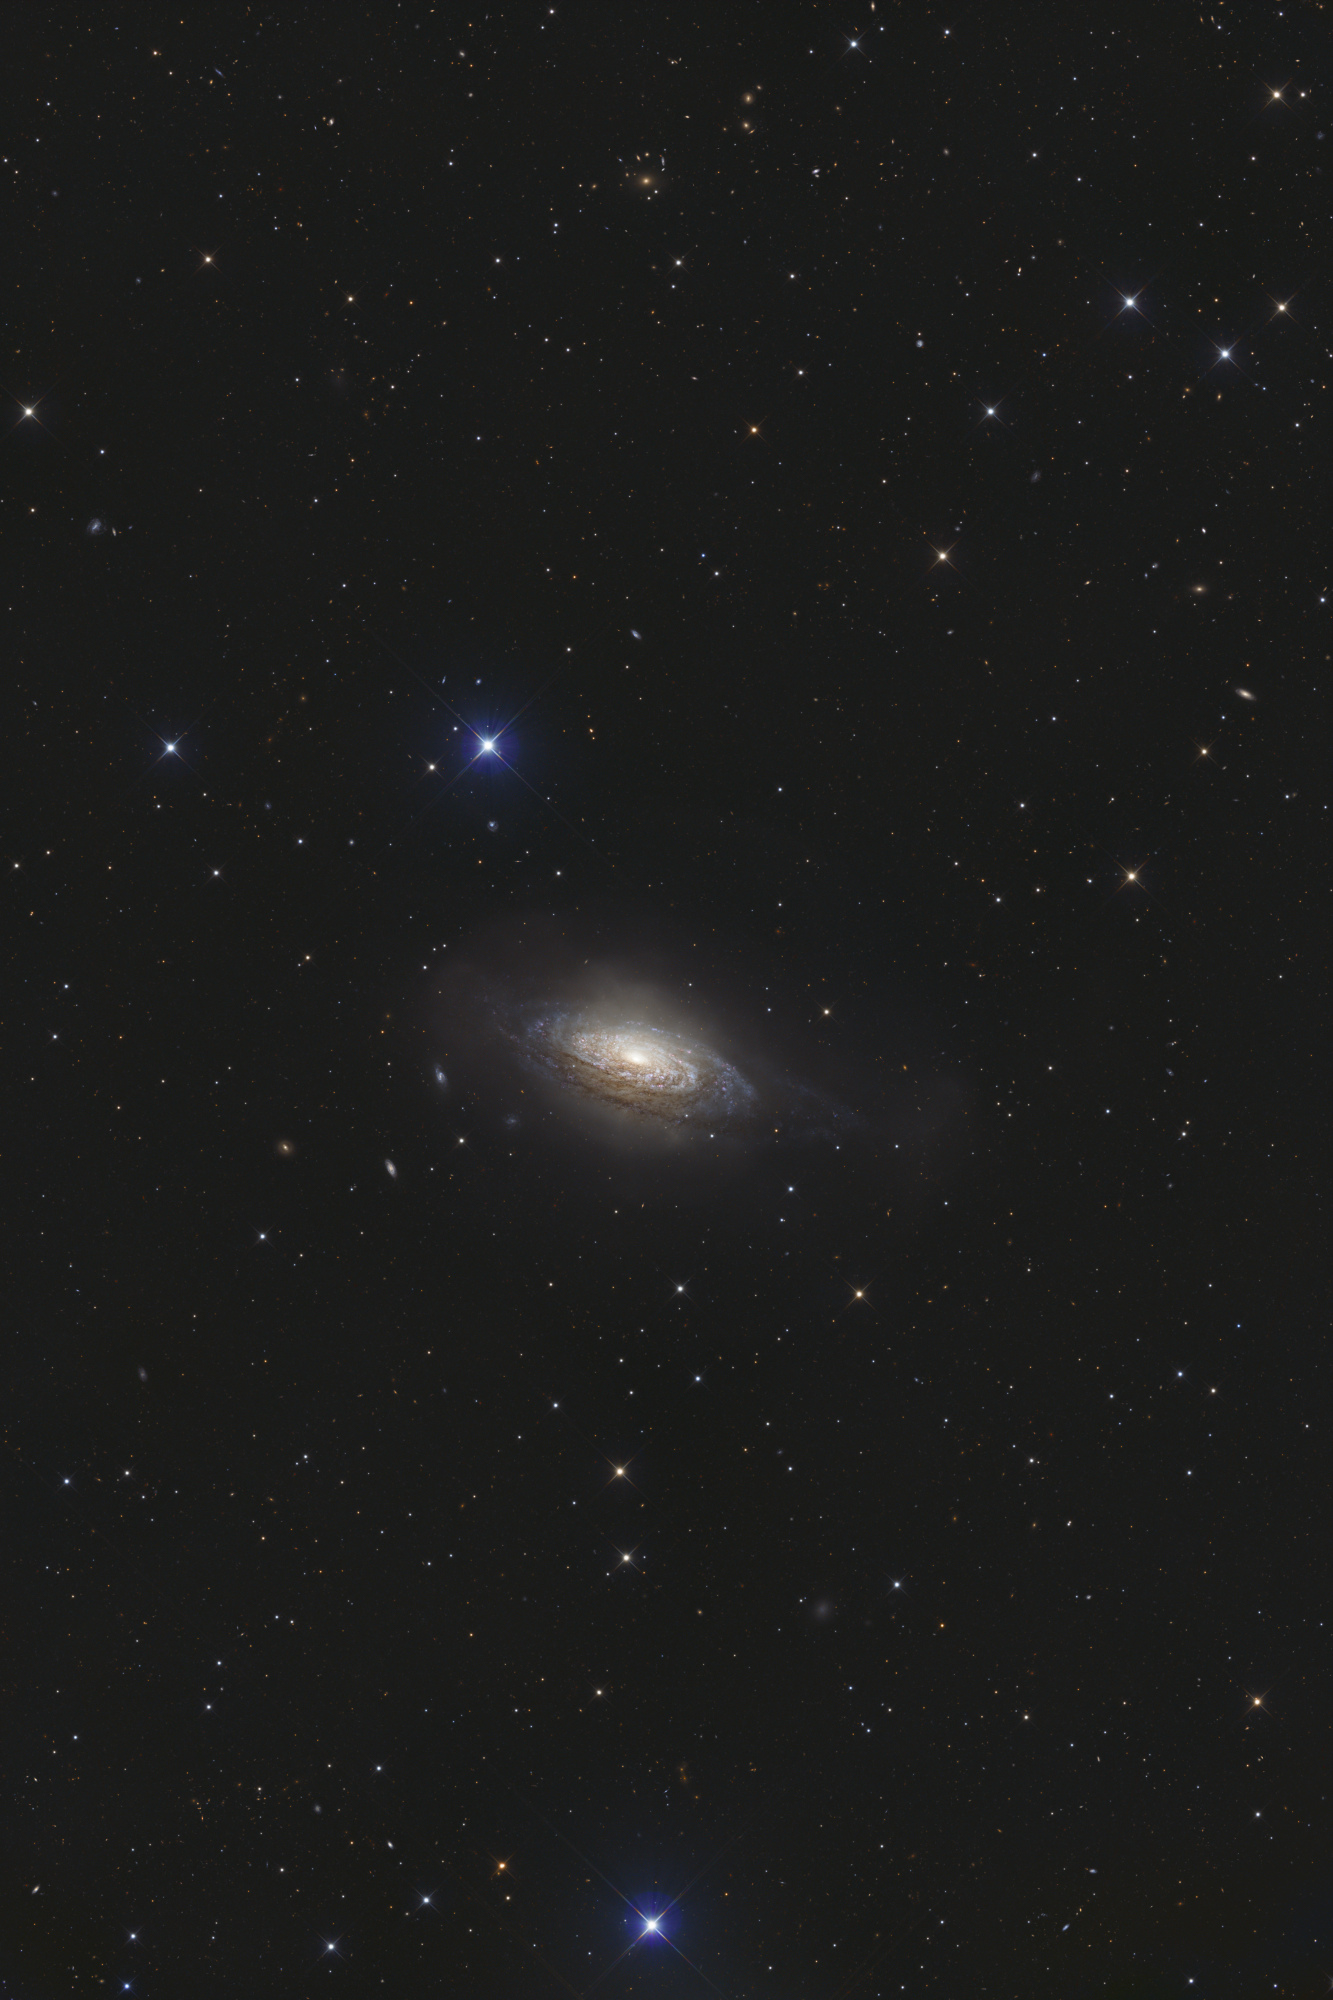 NGC_3521_LRVB-BXT_r-NonLineaire-Final-V2.thumb.jpg.a1213d81a39373ed3410f2925ee7a693.jpg